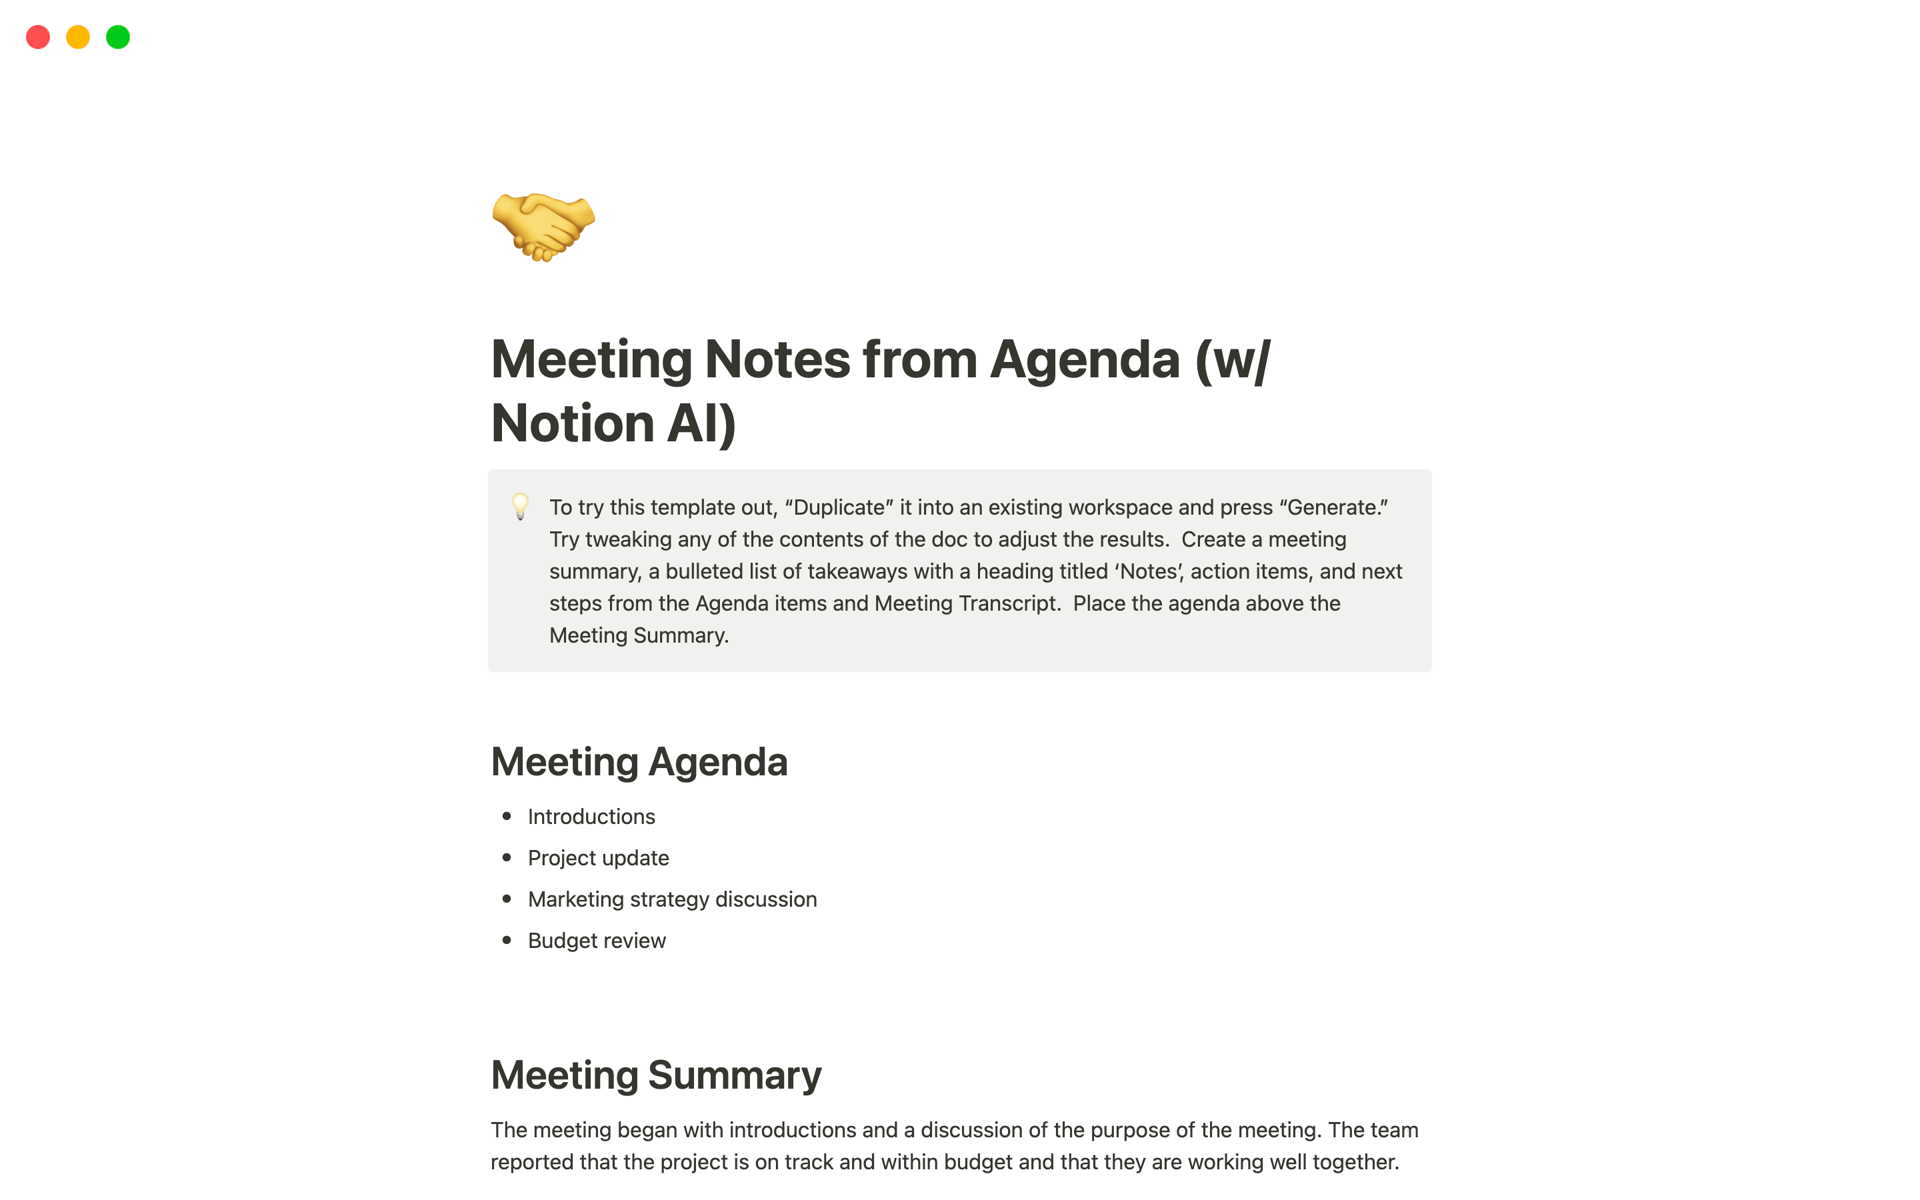 Captura de tela da coleção Top Free Meeting Notes Templates in Notion por Notion